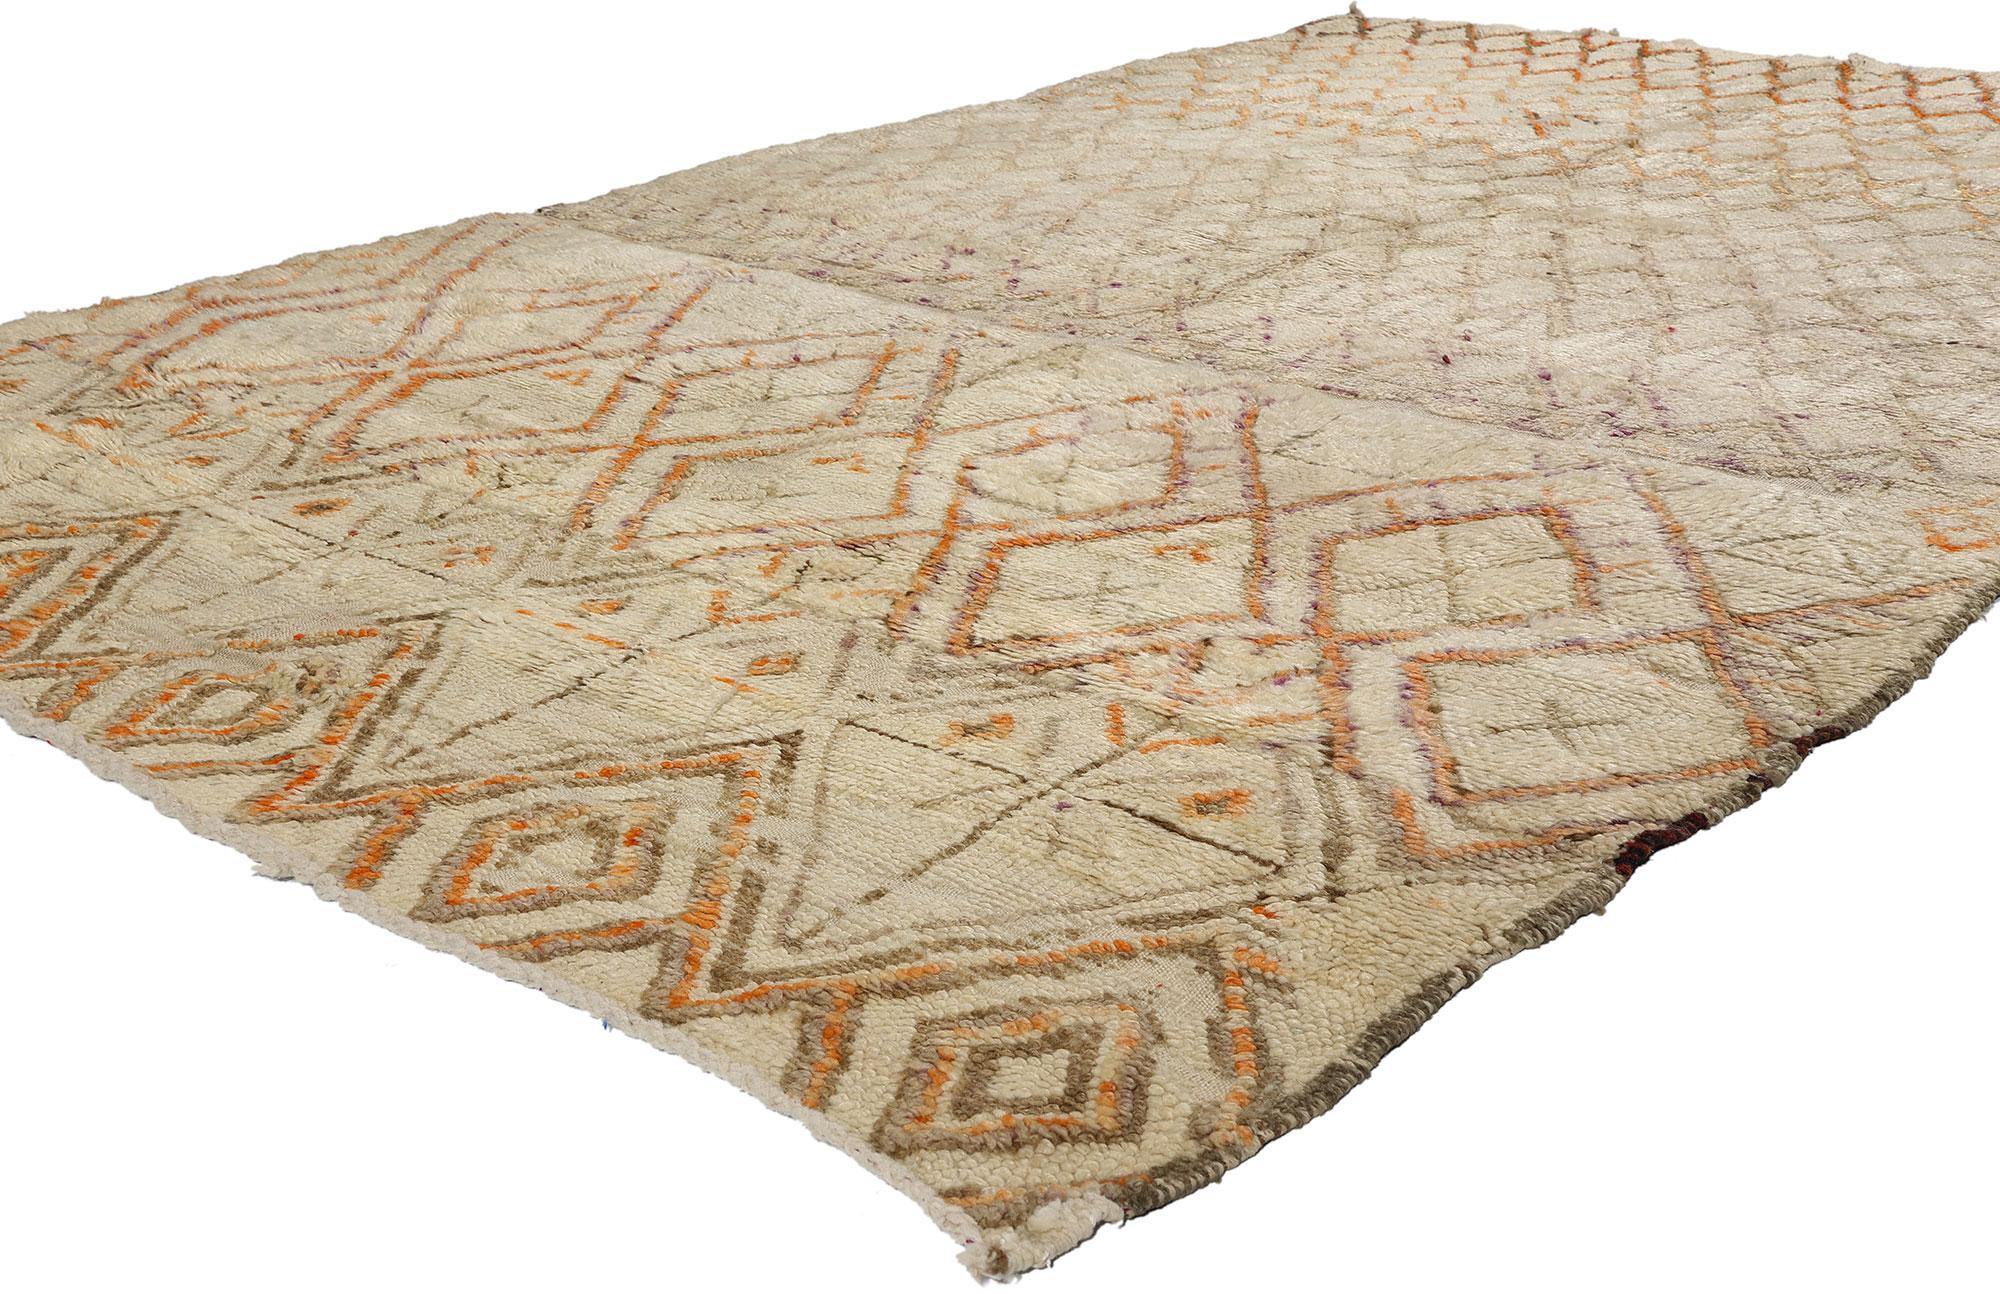 21764 Vintage Marokkanischer Beni Ourain Teppich, 05'05 x 08'11. Diese fein gearbeiteten Teppiche, die vom angesehenen Beni Ourain-Stamm in Marokko stammen, sind eine Hommage an die Tradition mit viel Liebe zum Detail. Sie verwenden unbehandelte